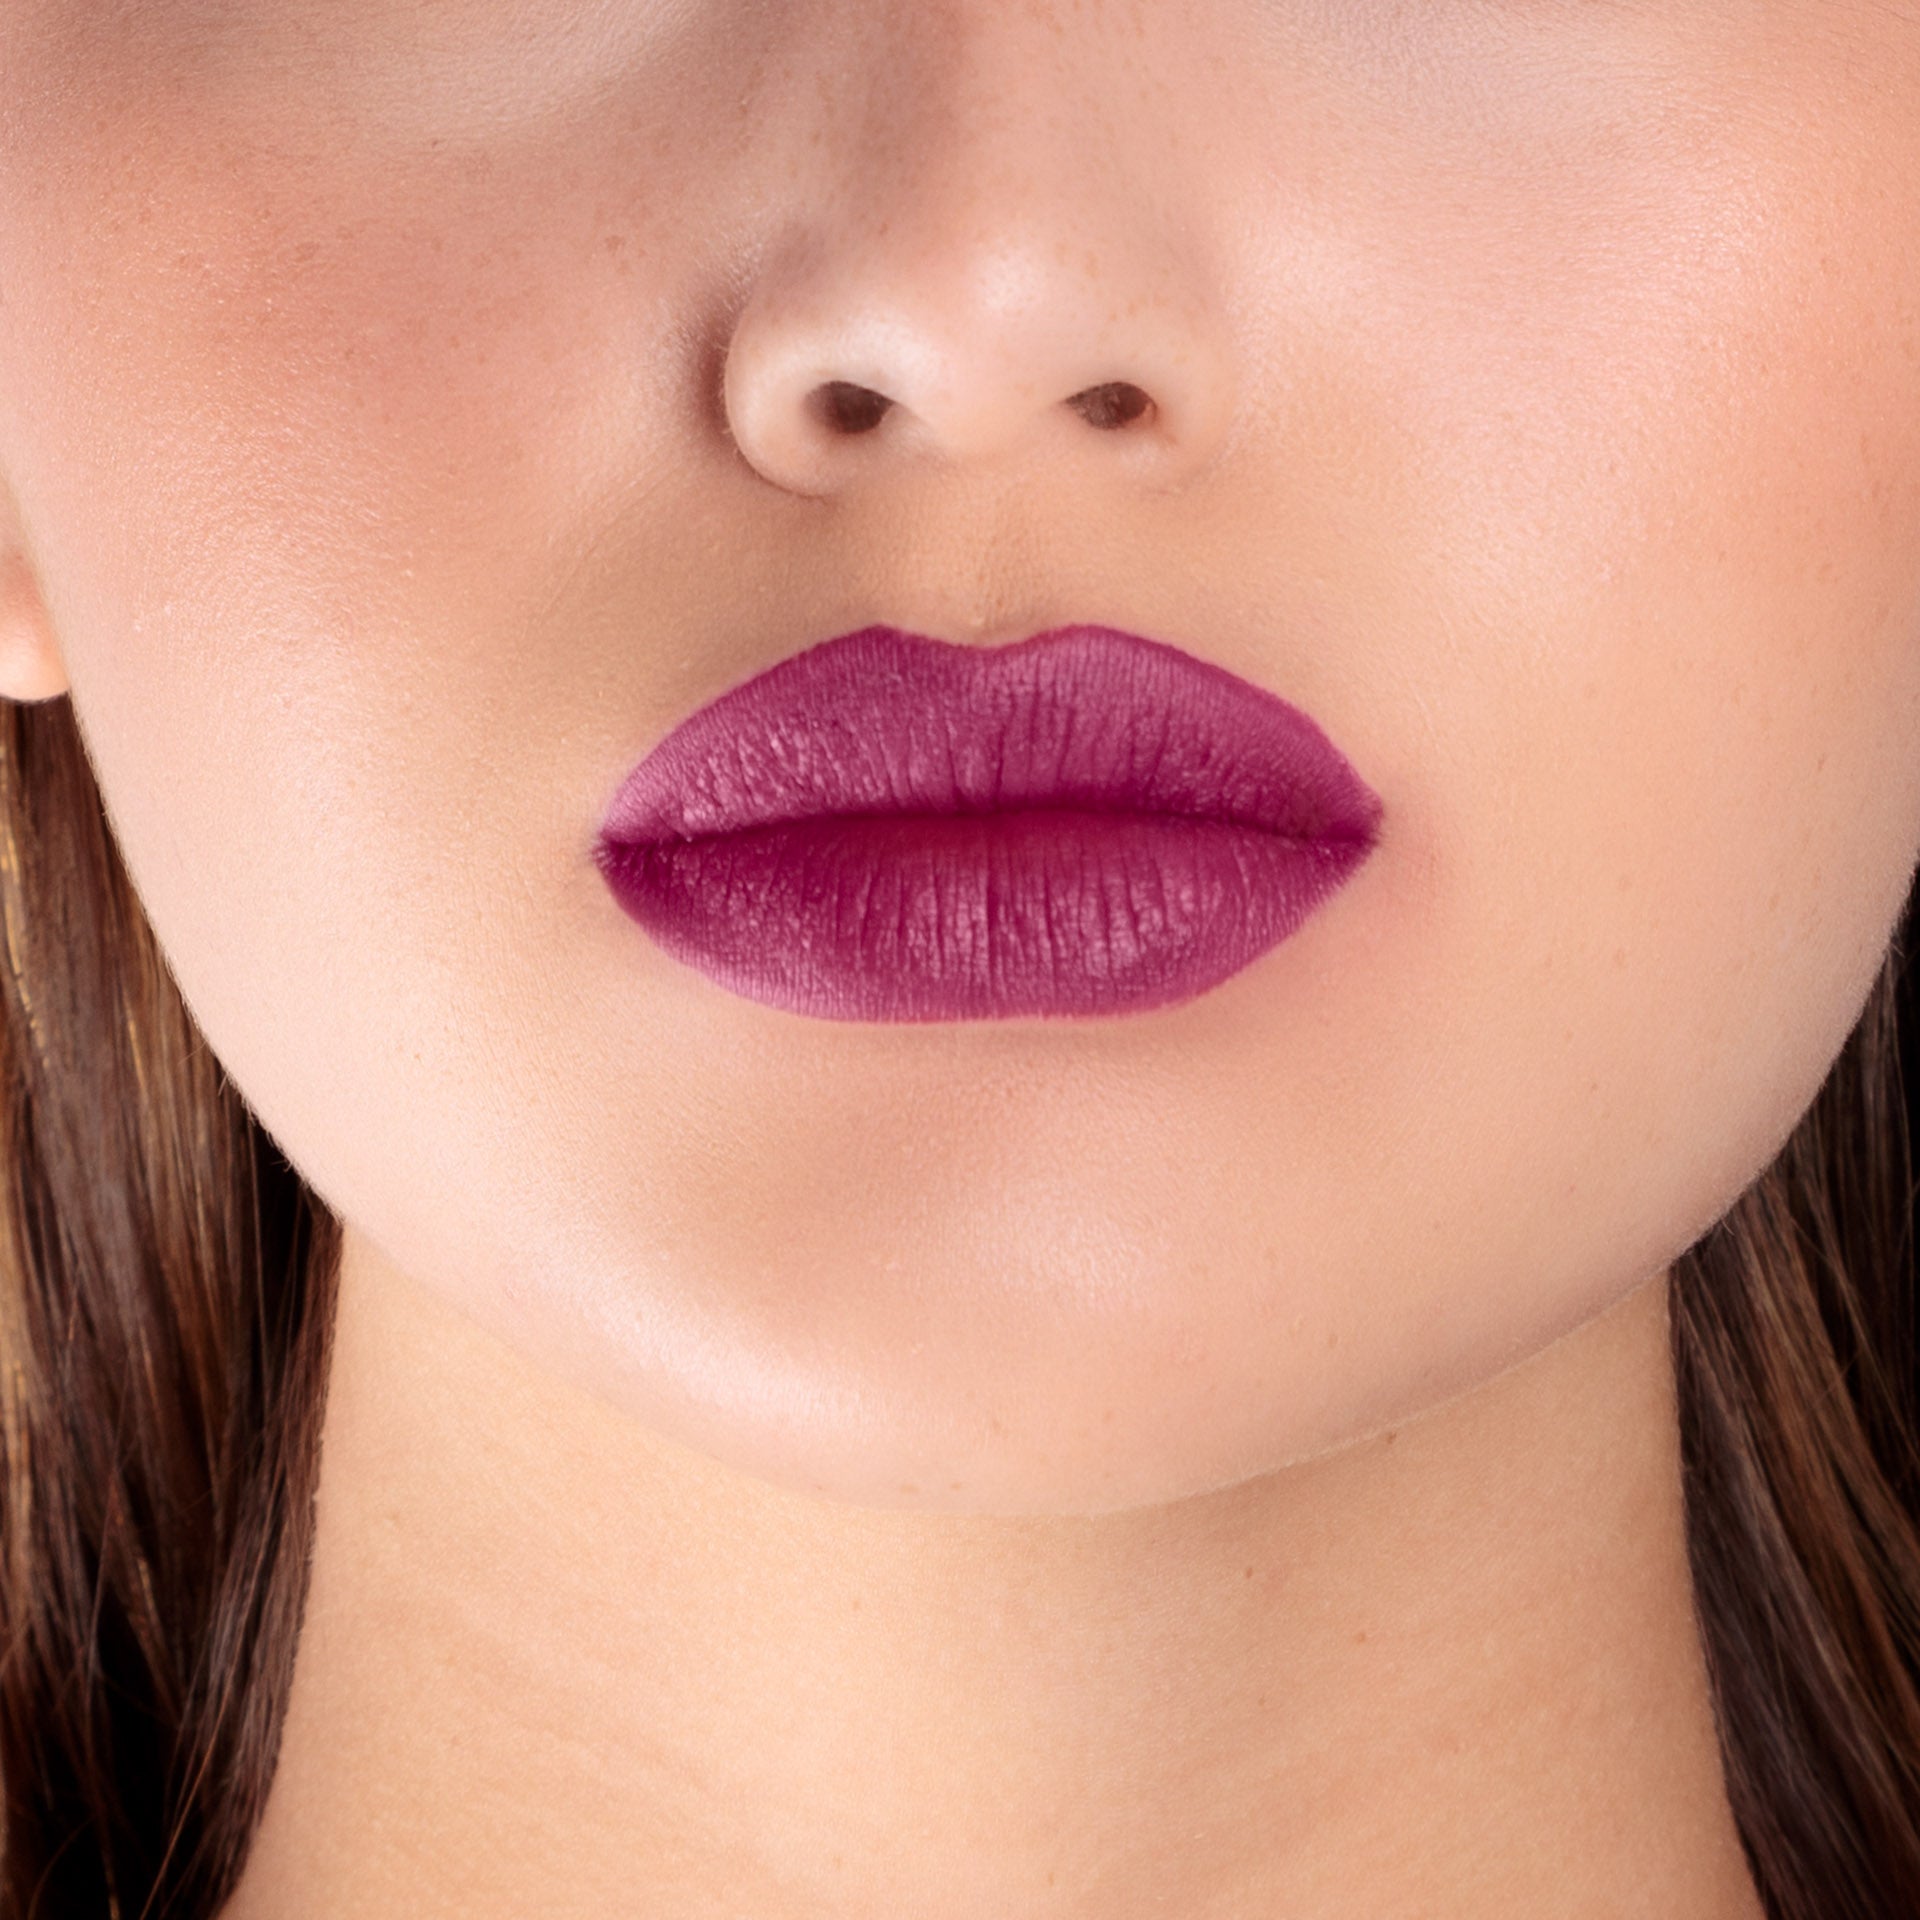 Closeup of a girls lips wearing LIPSAX in Scandalous